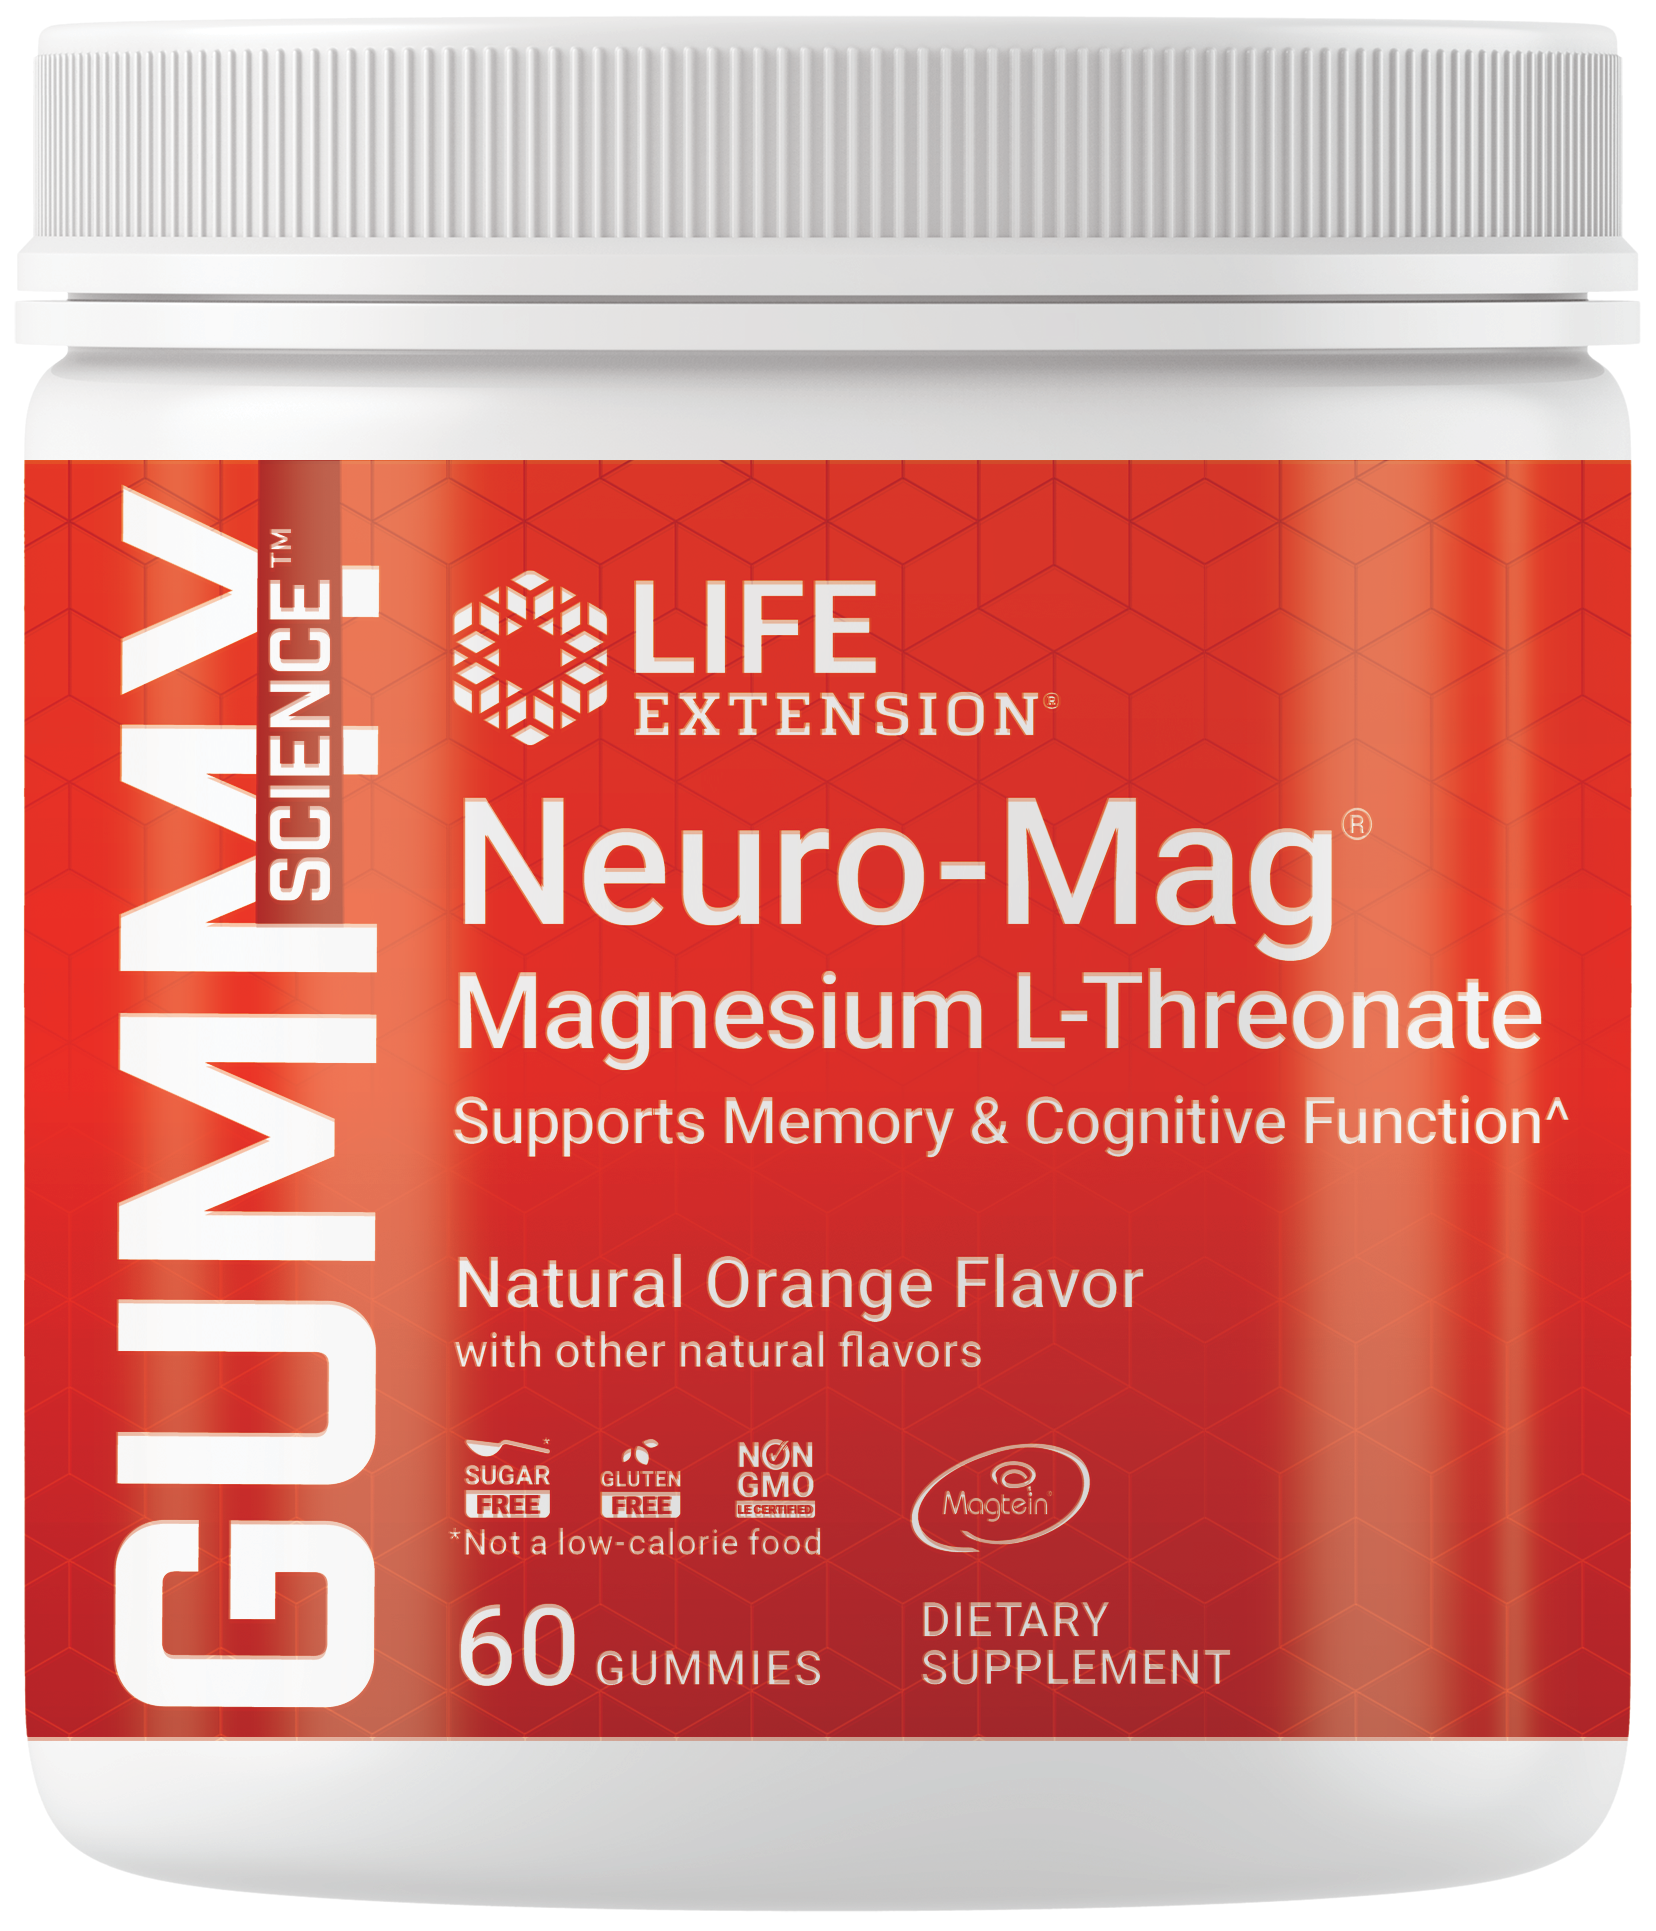 Gummy Science™ Neuro-Mag® Magnesium L-Threonate, gummies sans sucre, saveur d'orange, avec du magnésium ultra-absorbable